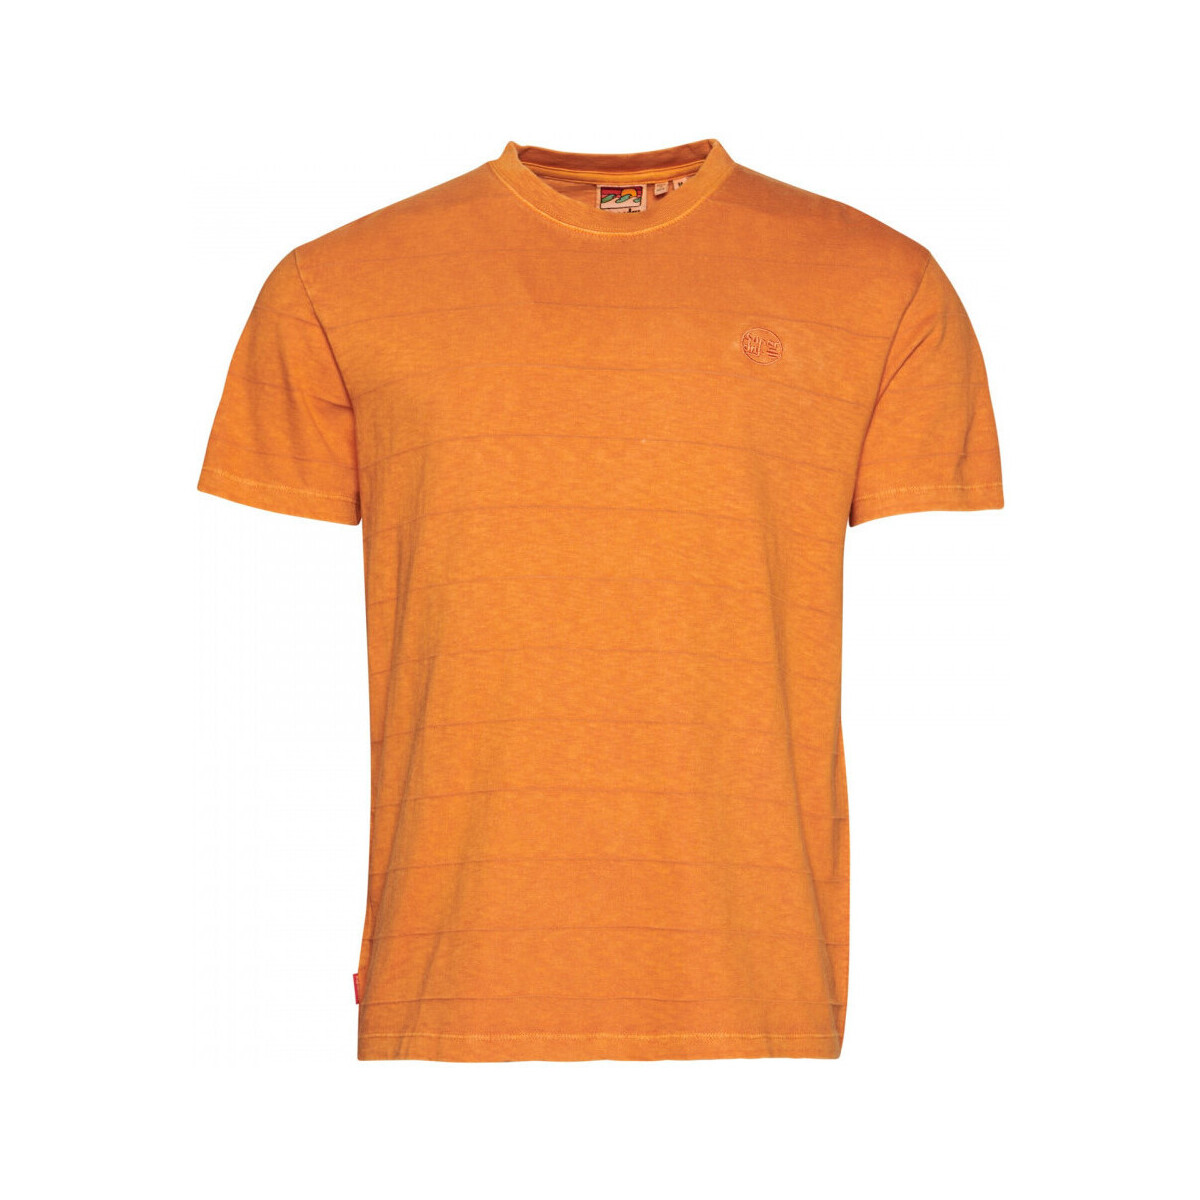 Ruhák Férfi Pólók / Galléros Pólók Superdry Vintage texture Narancssárga